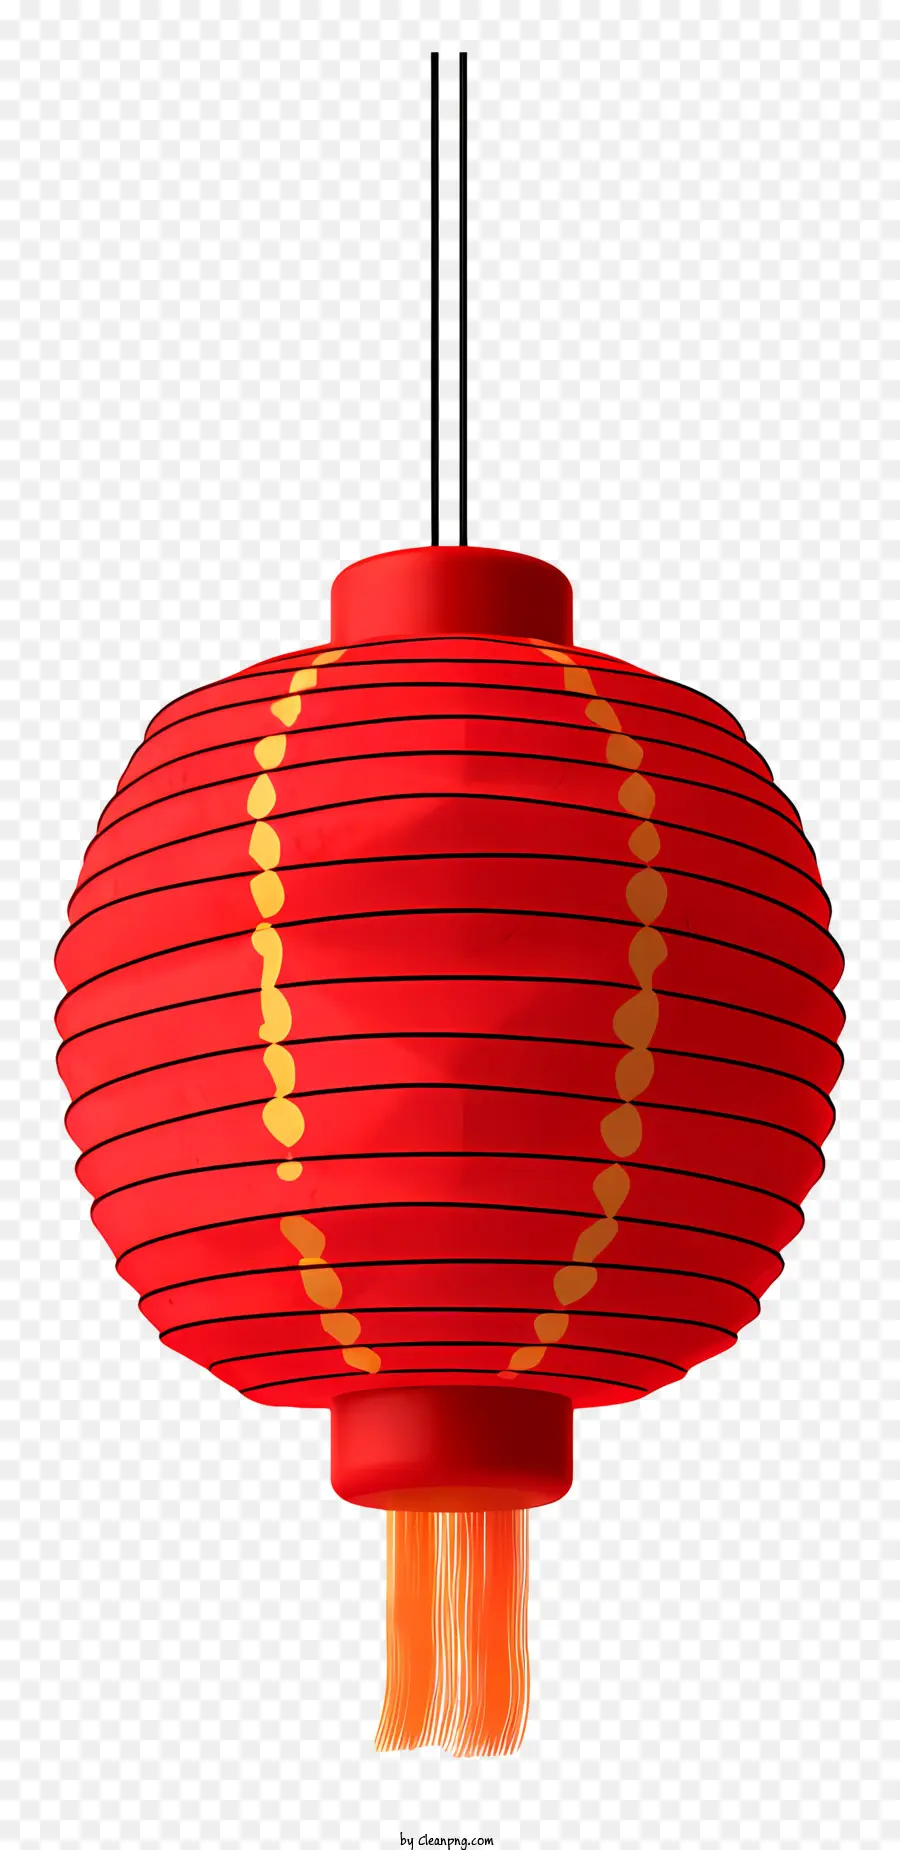 đèn lồng Trung Quốc - Đèn lồng đỏ với thiết kế vàng treo trên màu đen